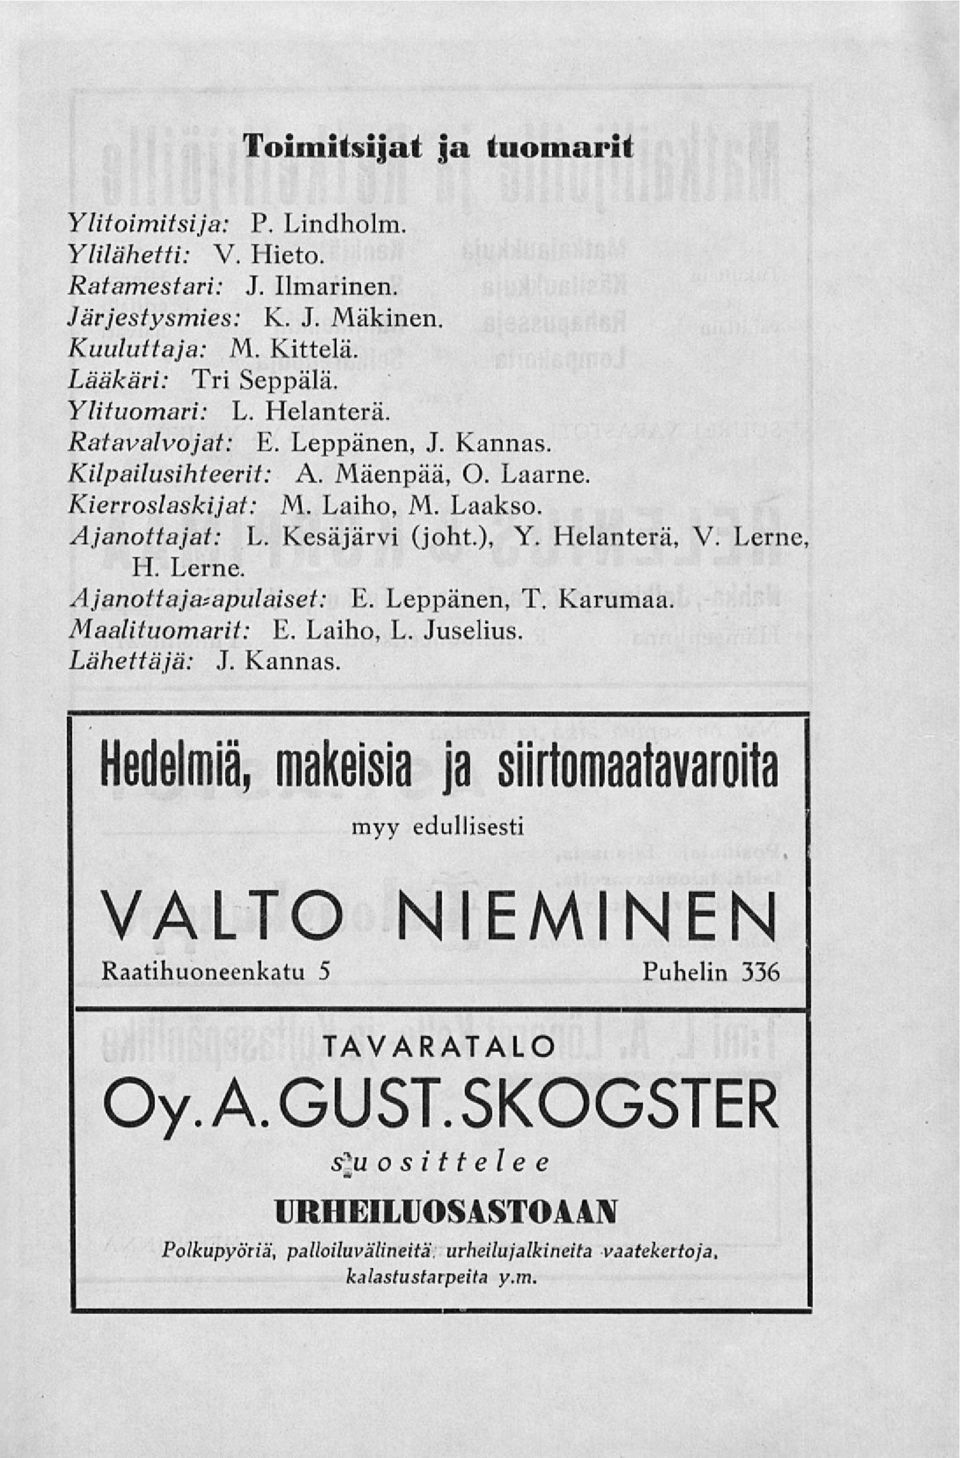 Helanterä, V. Lerne, H. Lerne. Ajanottajatapulaiset: E. Leppänen, T. Karumaa. Maalituomarit: E. Laiho, L. Juselius. Lähettäjä: J. Kannas.